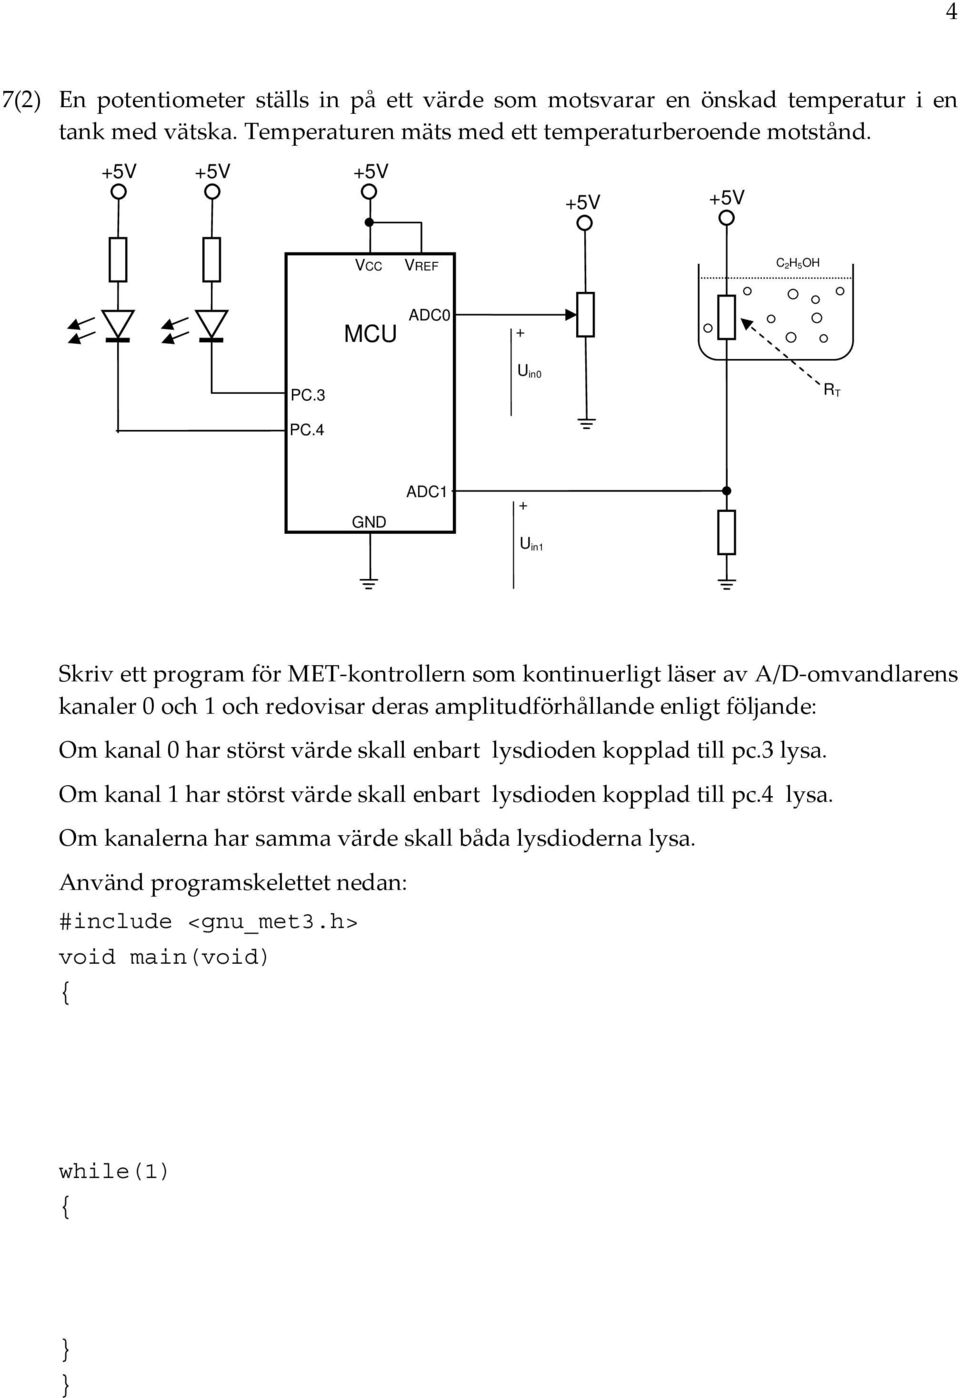 4 in0 R T GND DC1 + in1 Skriv ett program för MET kontrollern som kontinuerligt läser av /D omvandlarens kanaler 0 och 1 och redovisar deras amplitudförhållande enligt